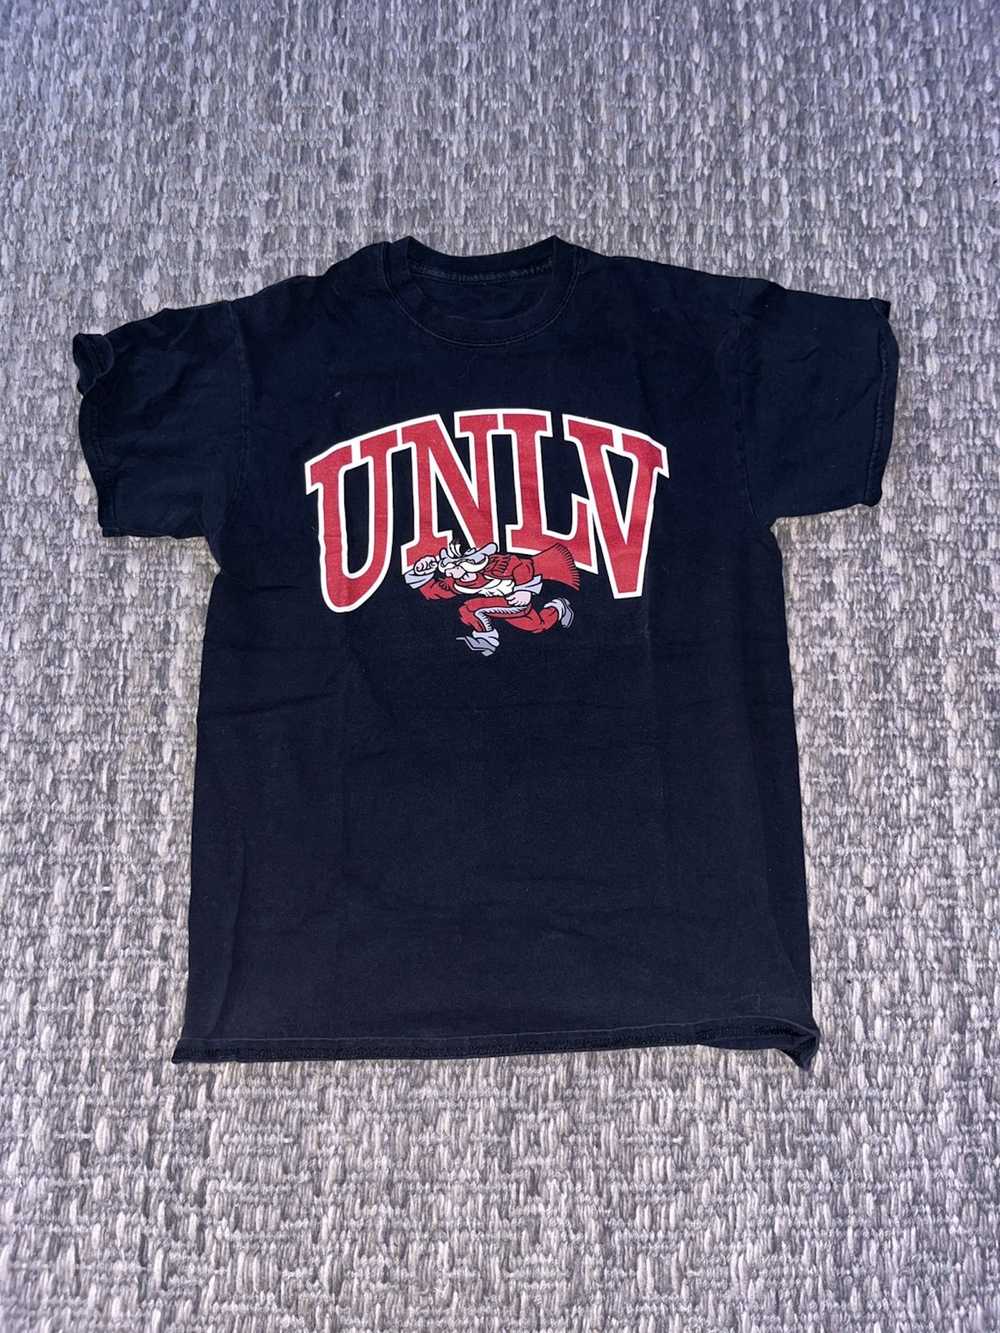 Vintage UNLV vintage tee shirt - image 1